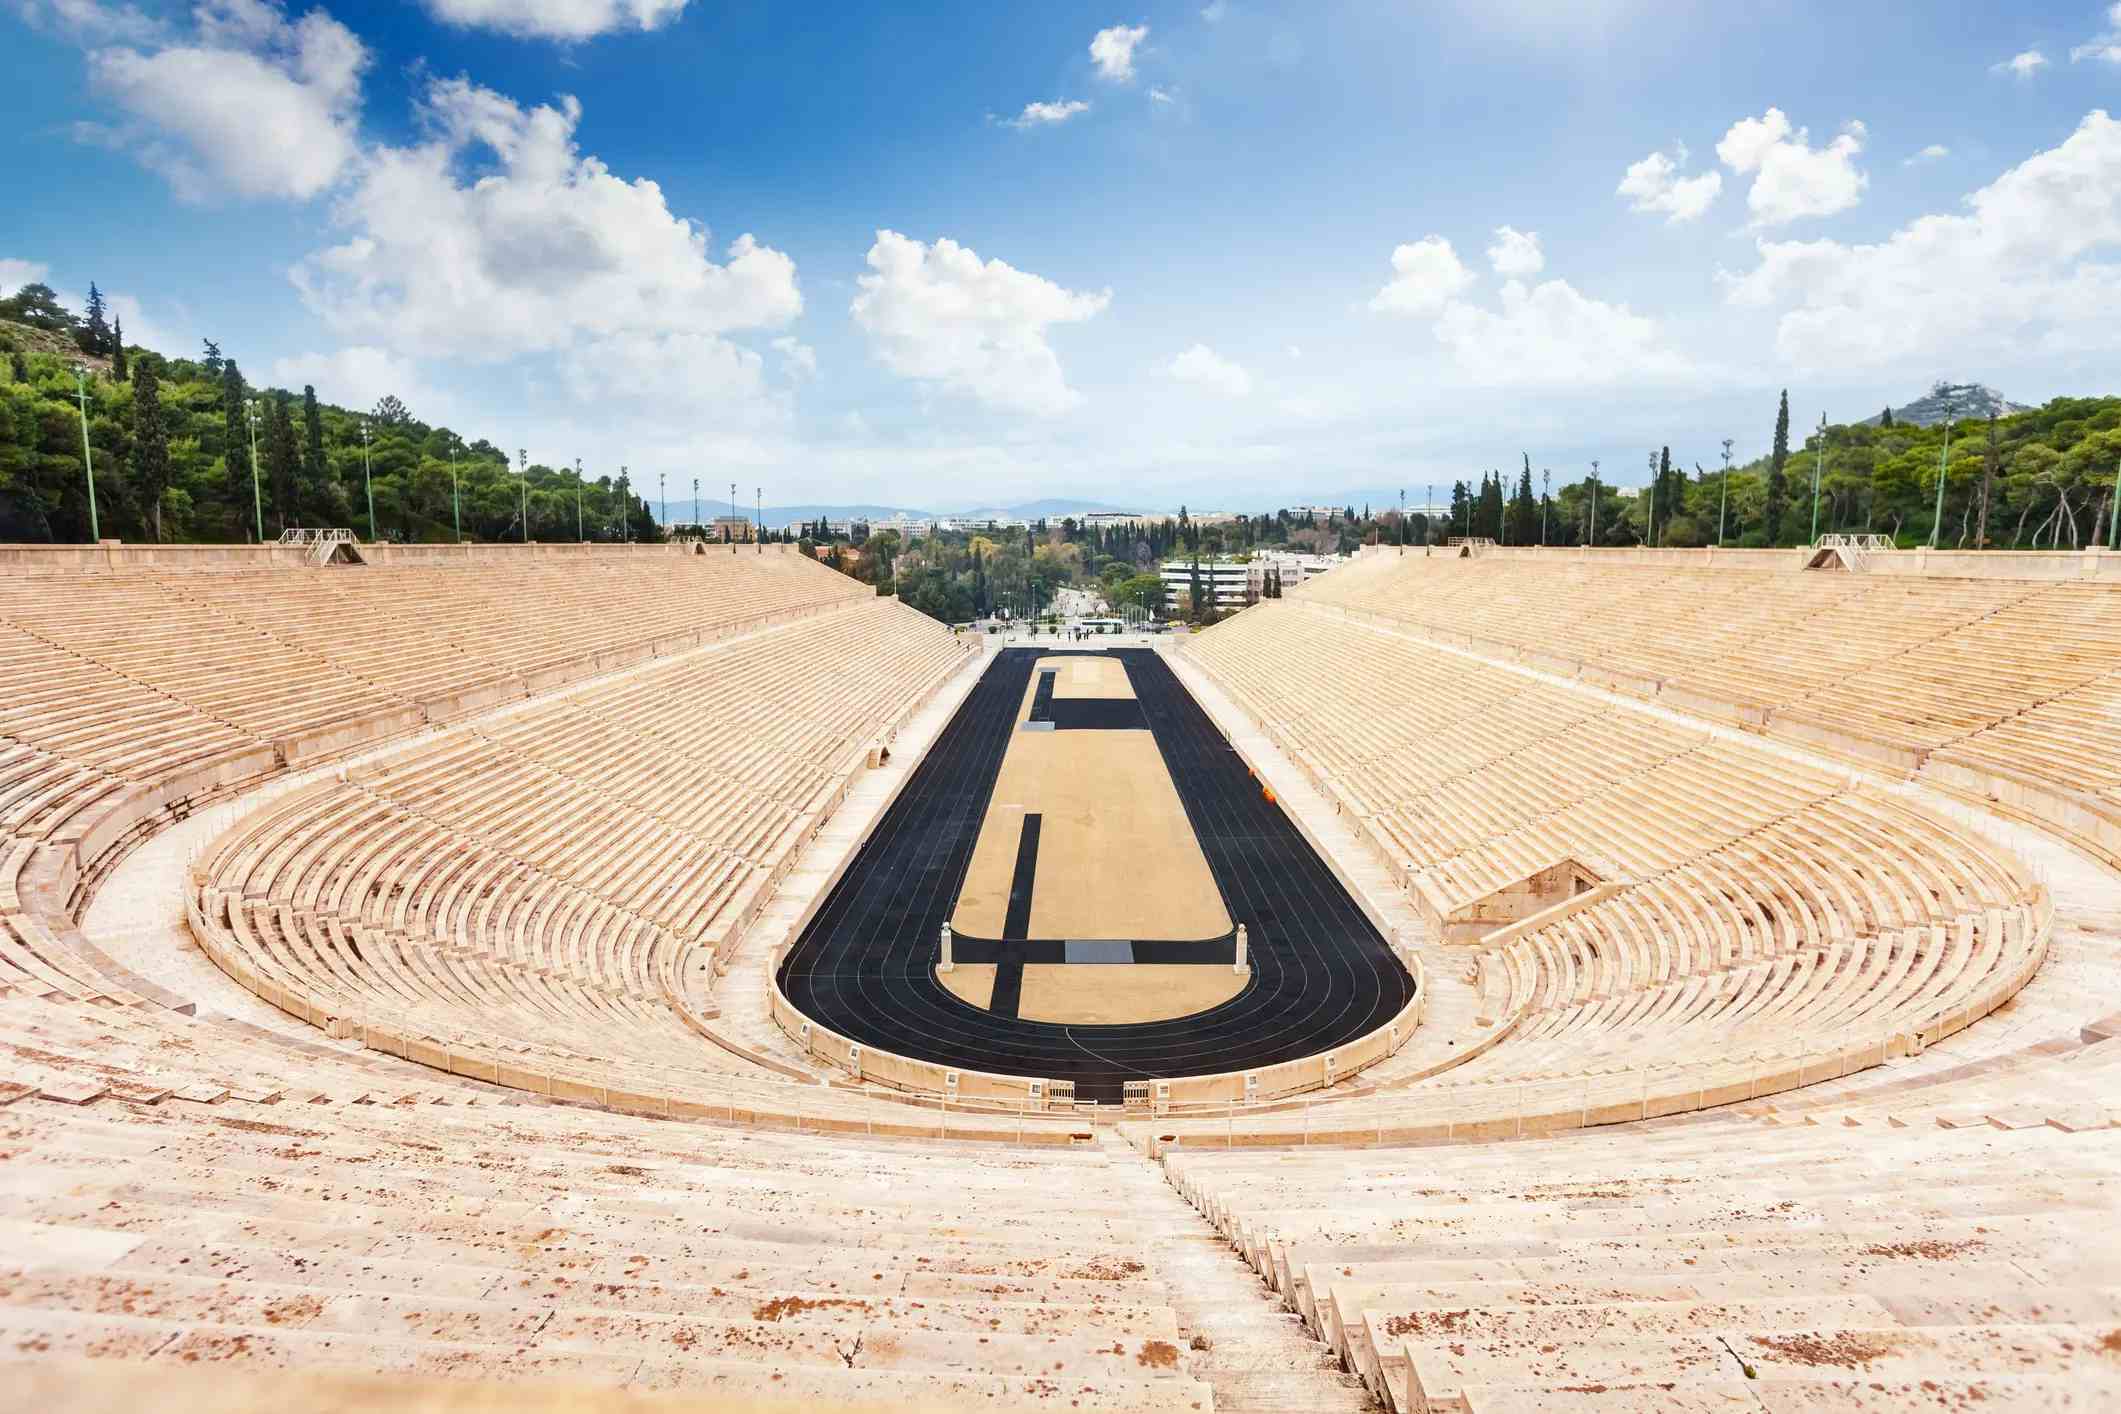 Panathenaic Stadium image